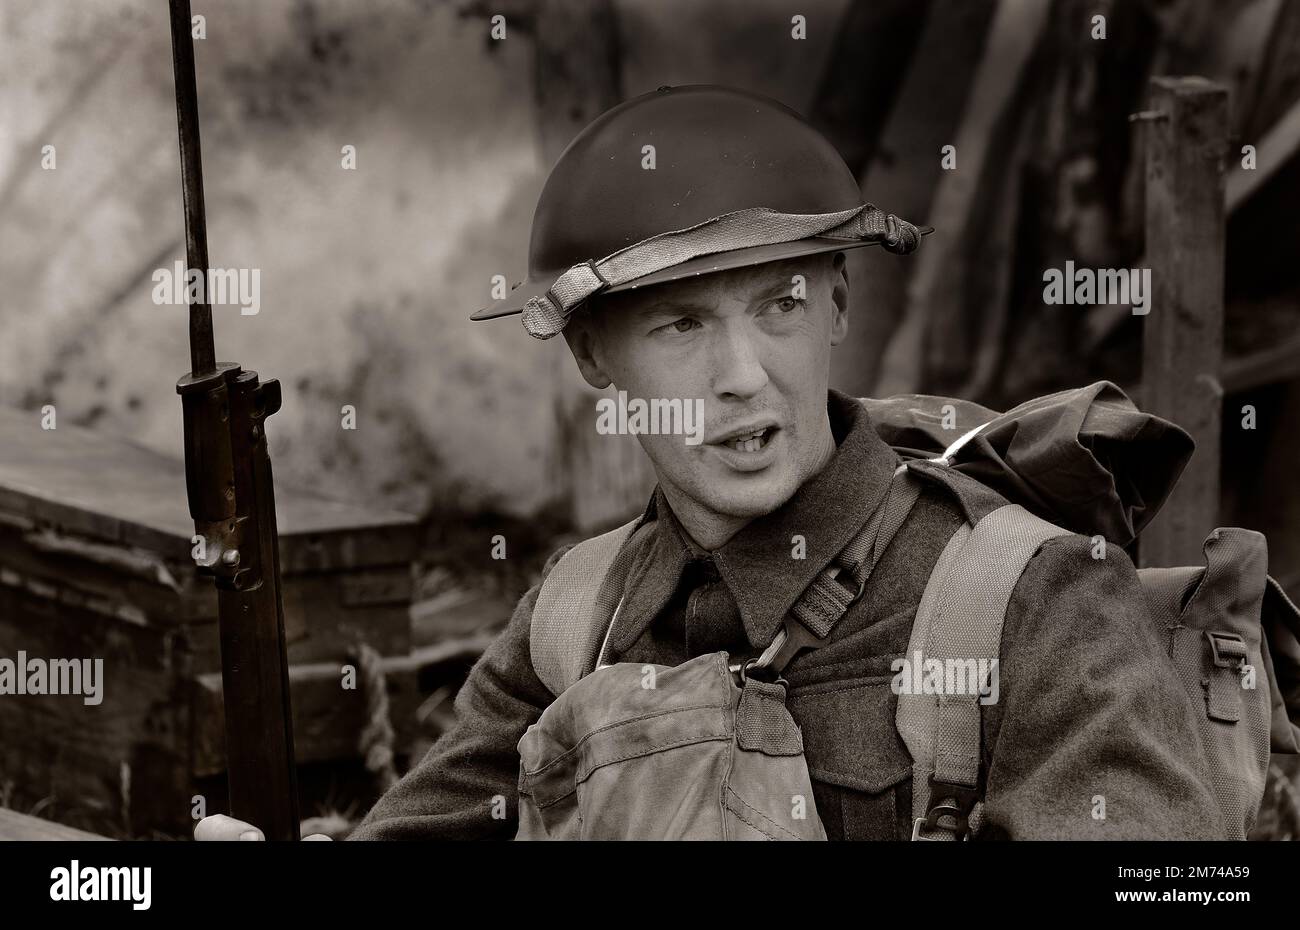 Schauspieler auf einer Militärshow, die Soldat der Weltkriege darstellt. Stockfoto